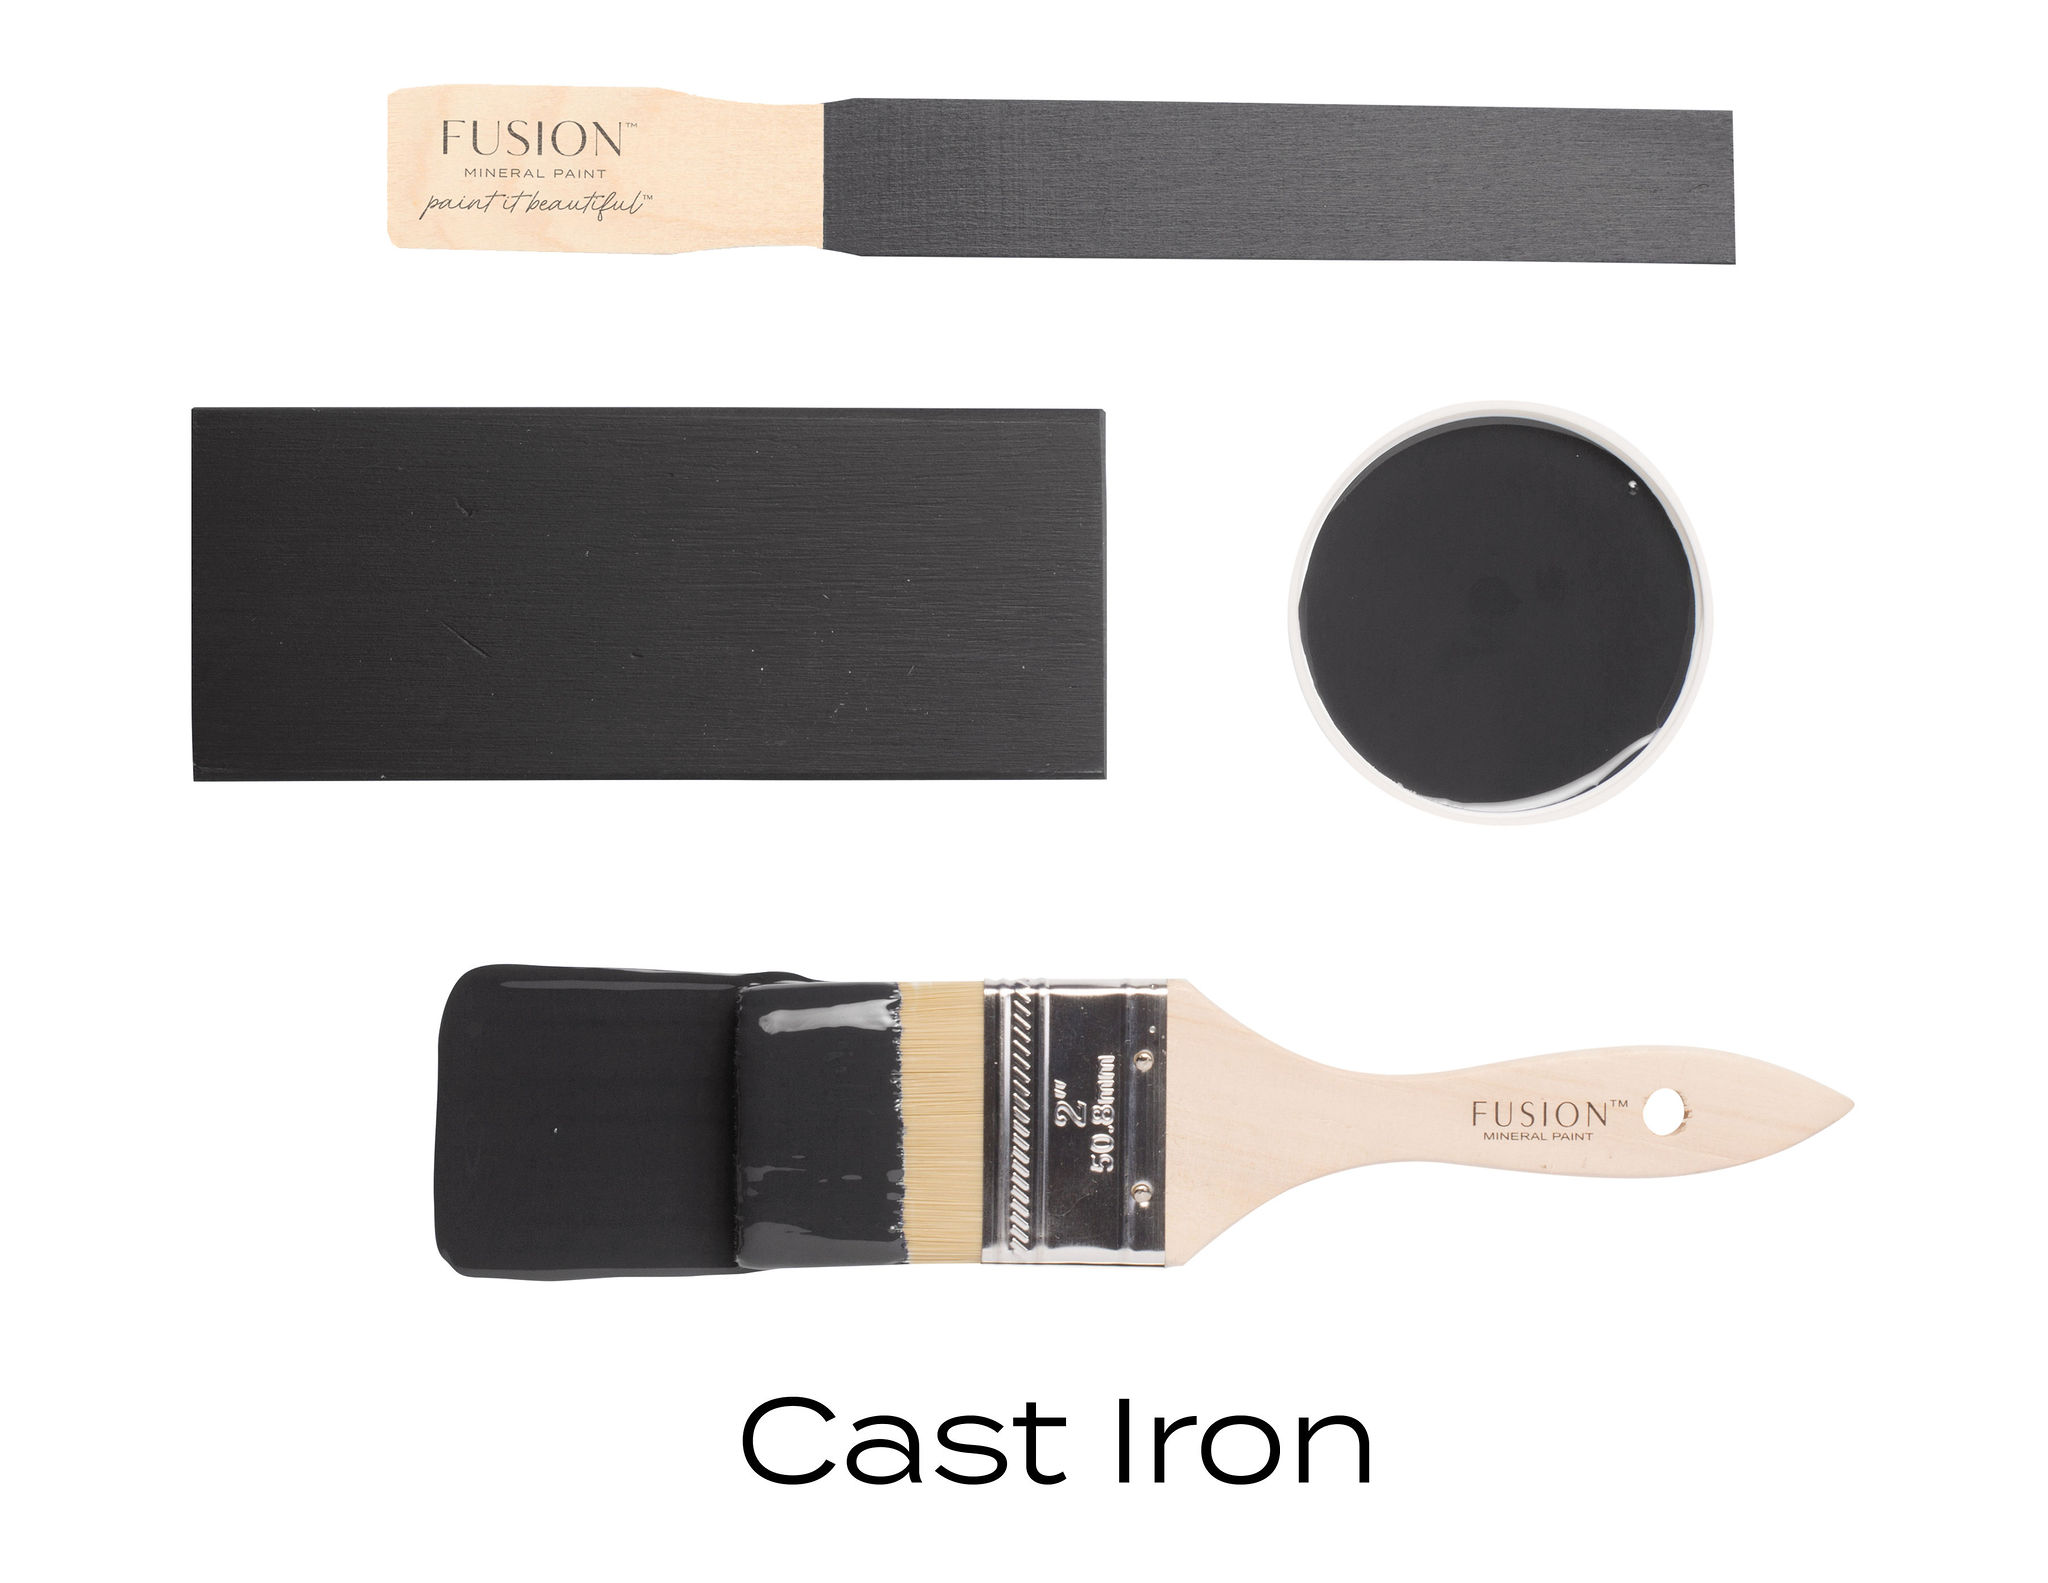 Cast Iron fusion paint